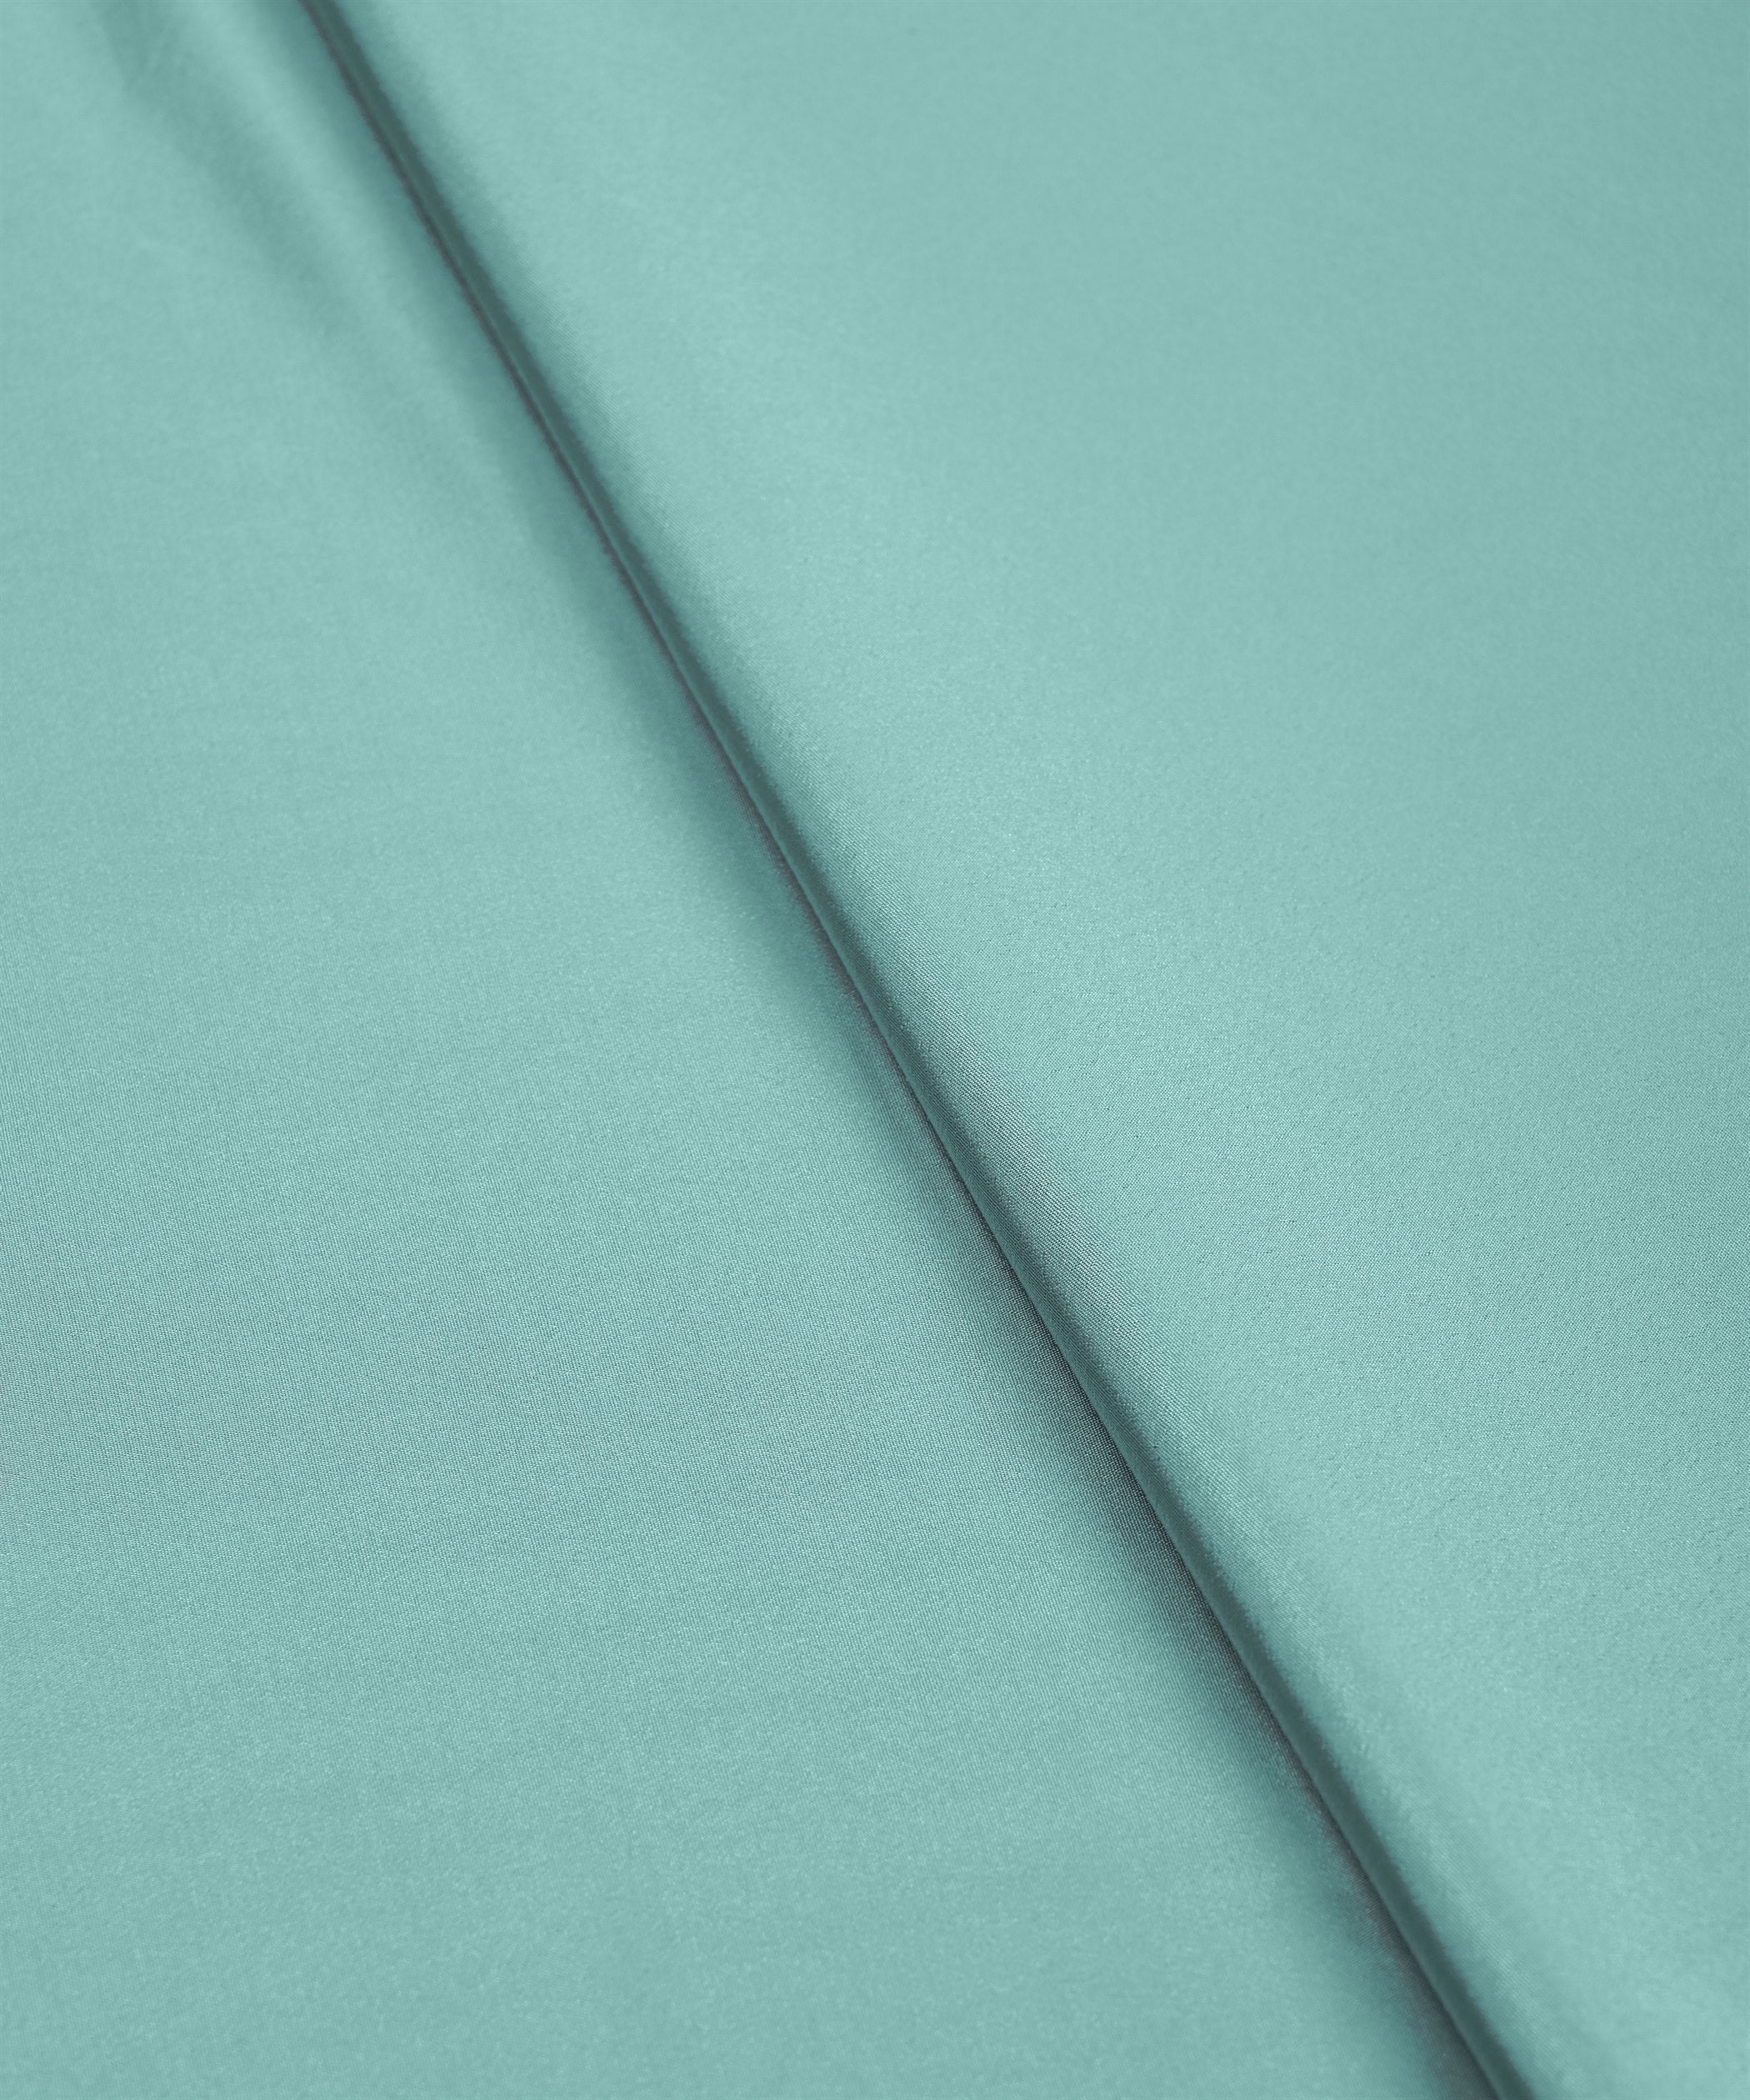 Aquamarine Green Plain Dyed Crepe Fabric